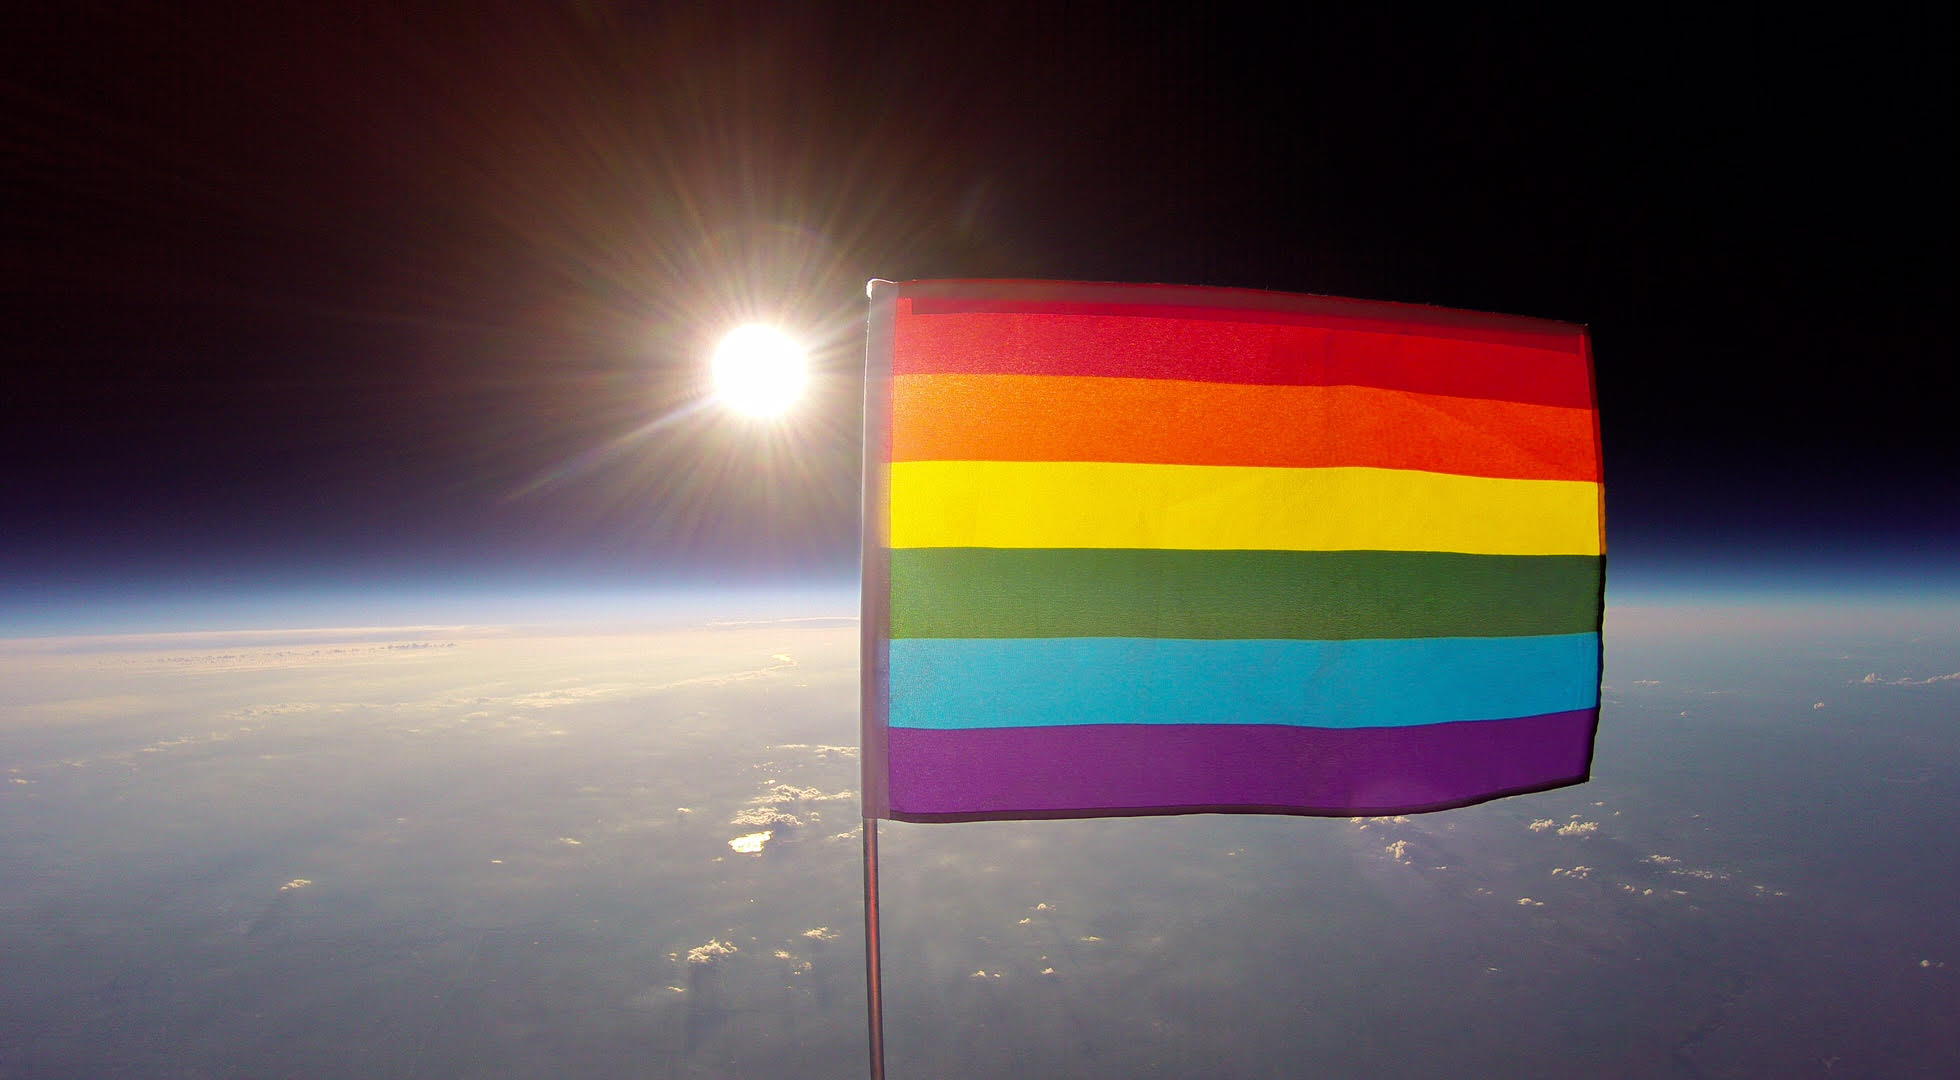 Un drapeau arc-en-ciel dans l'espace pour « promouvoir les libertés fondamentales qui élèvent l'humanité » (VIDEOS)